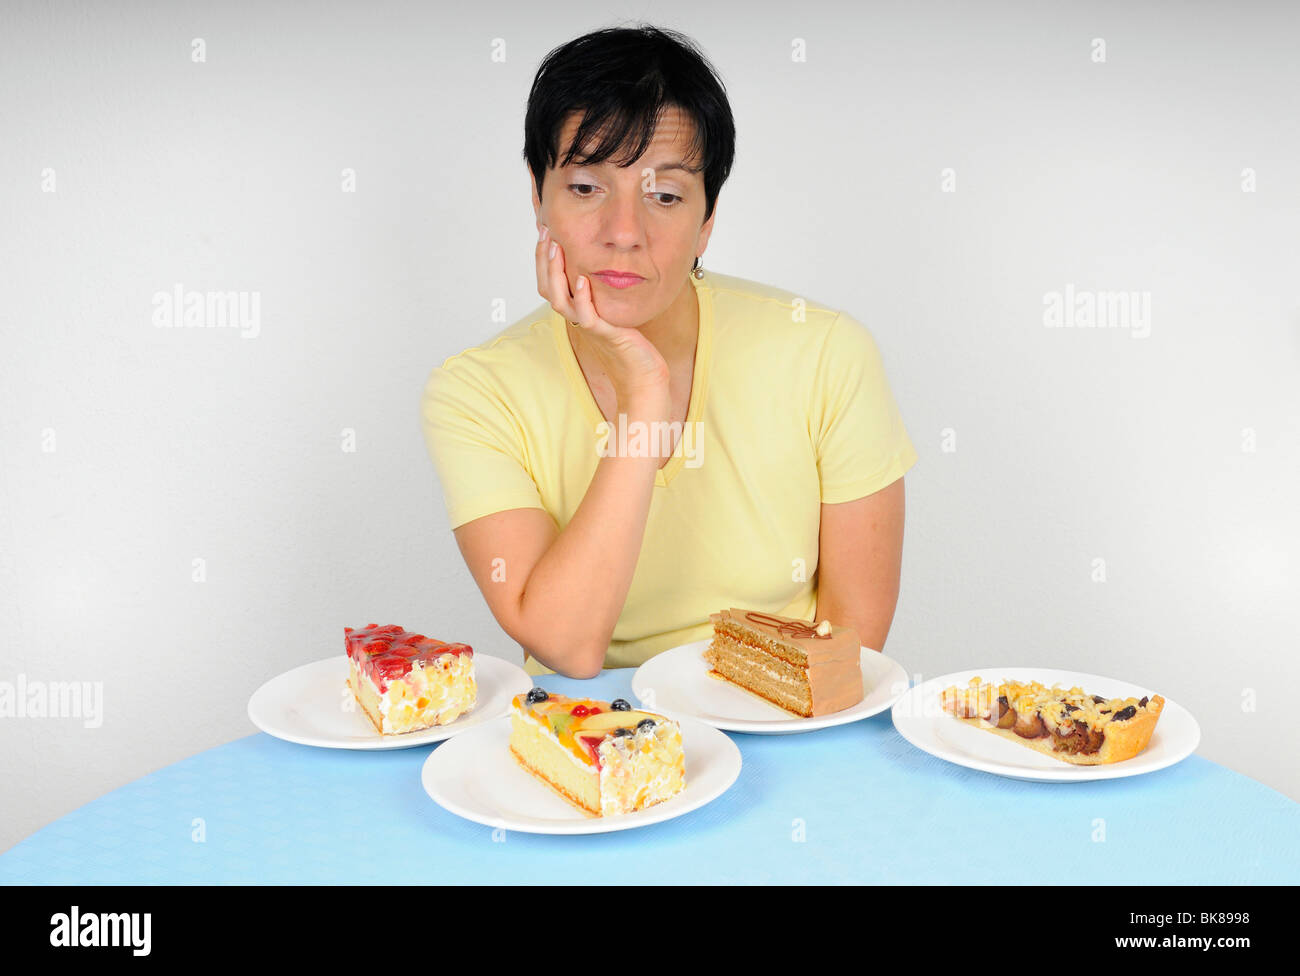 Как похудеть при климаксе форум. Потеря аппетита. Набор веса при климаксе. Ожирение при климаксе у женщин. Потеря аппетита причины у женщин.